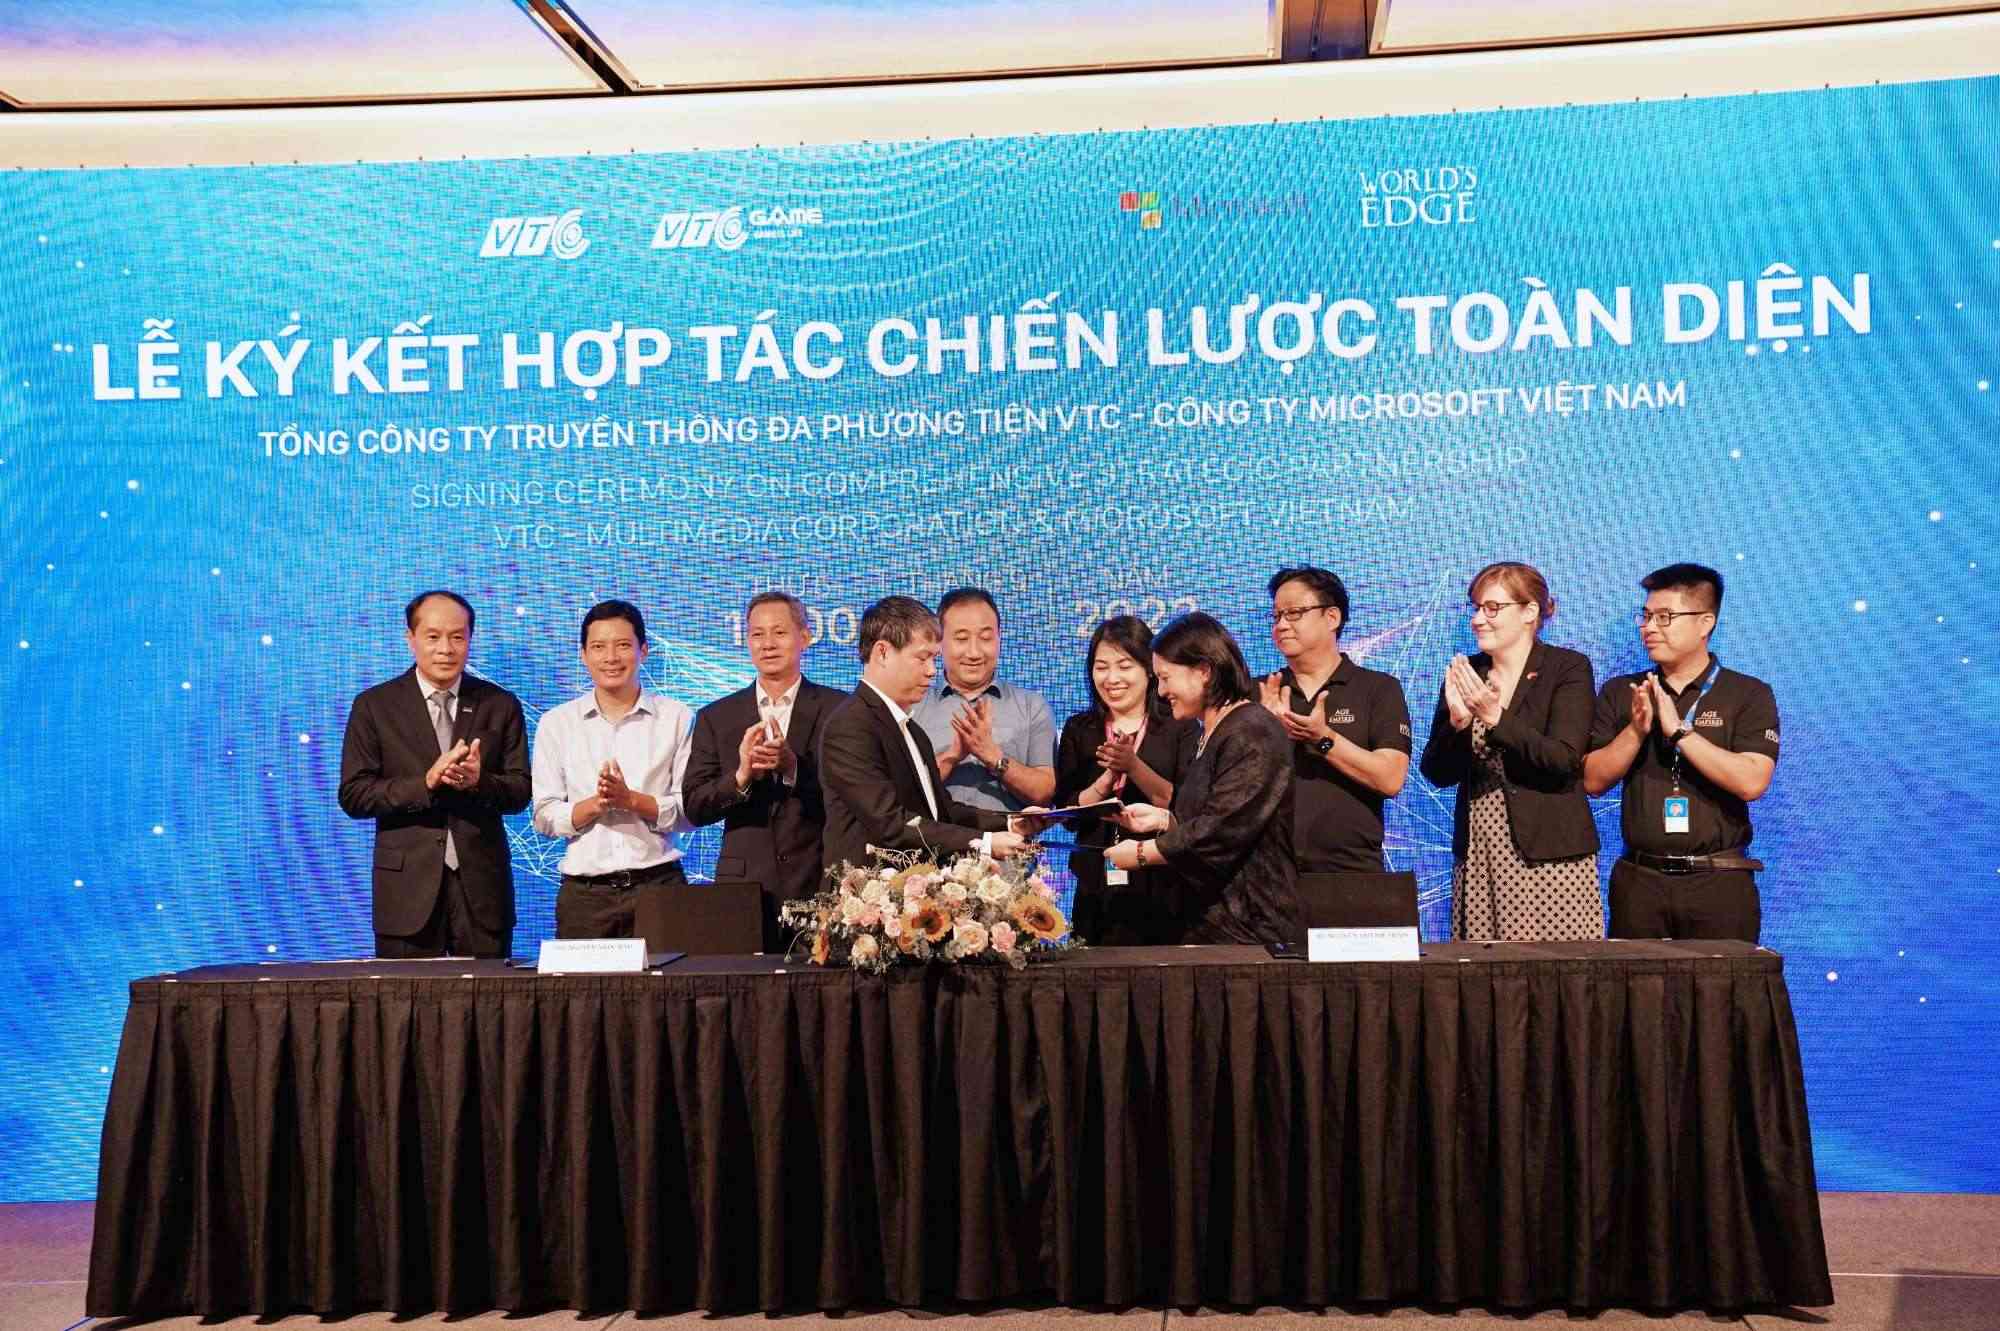 Đại diện VTC và Microsoft Việt Nam đã tiến hành ký kết hợp tác chiến lược dưới sự chứng kiến của các lãnh đạo Bộ ban ngành và lãnh đạo cấp cao hai bên.